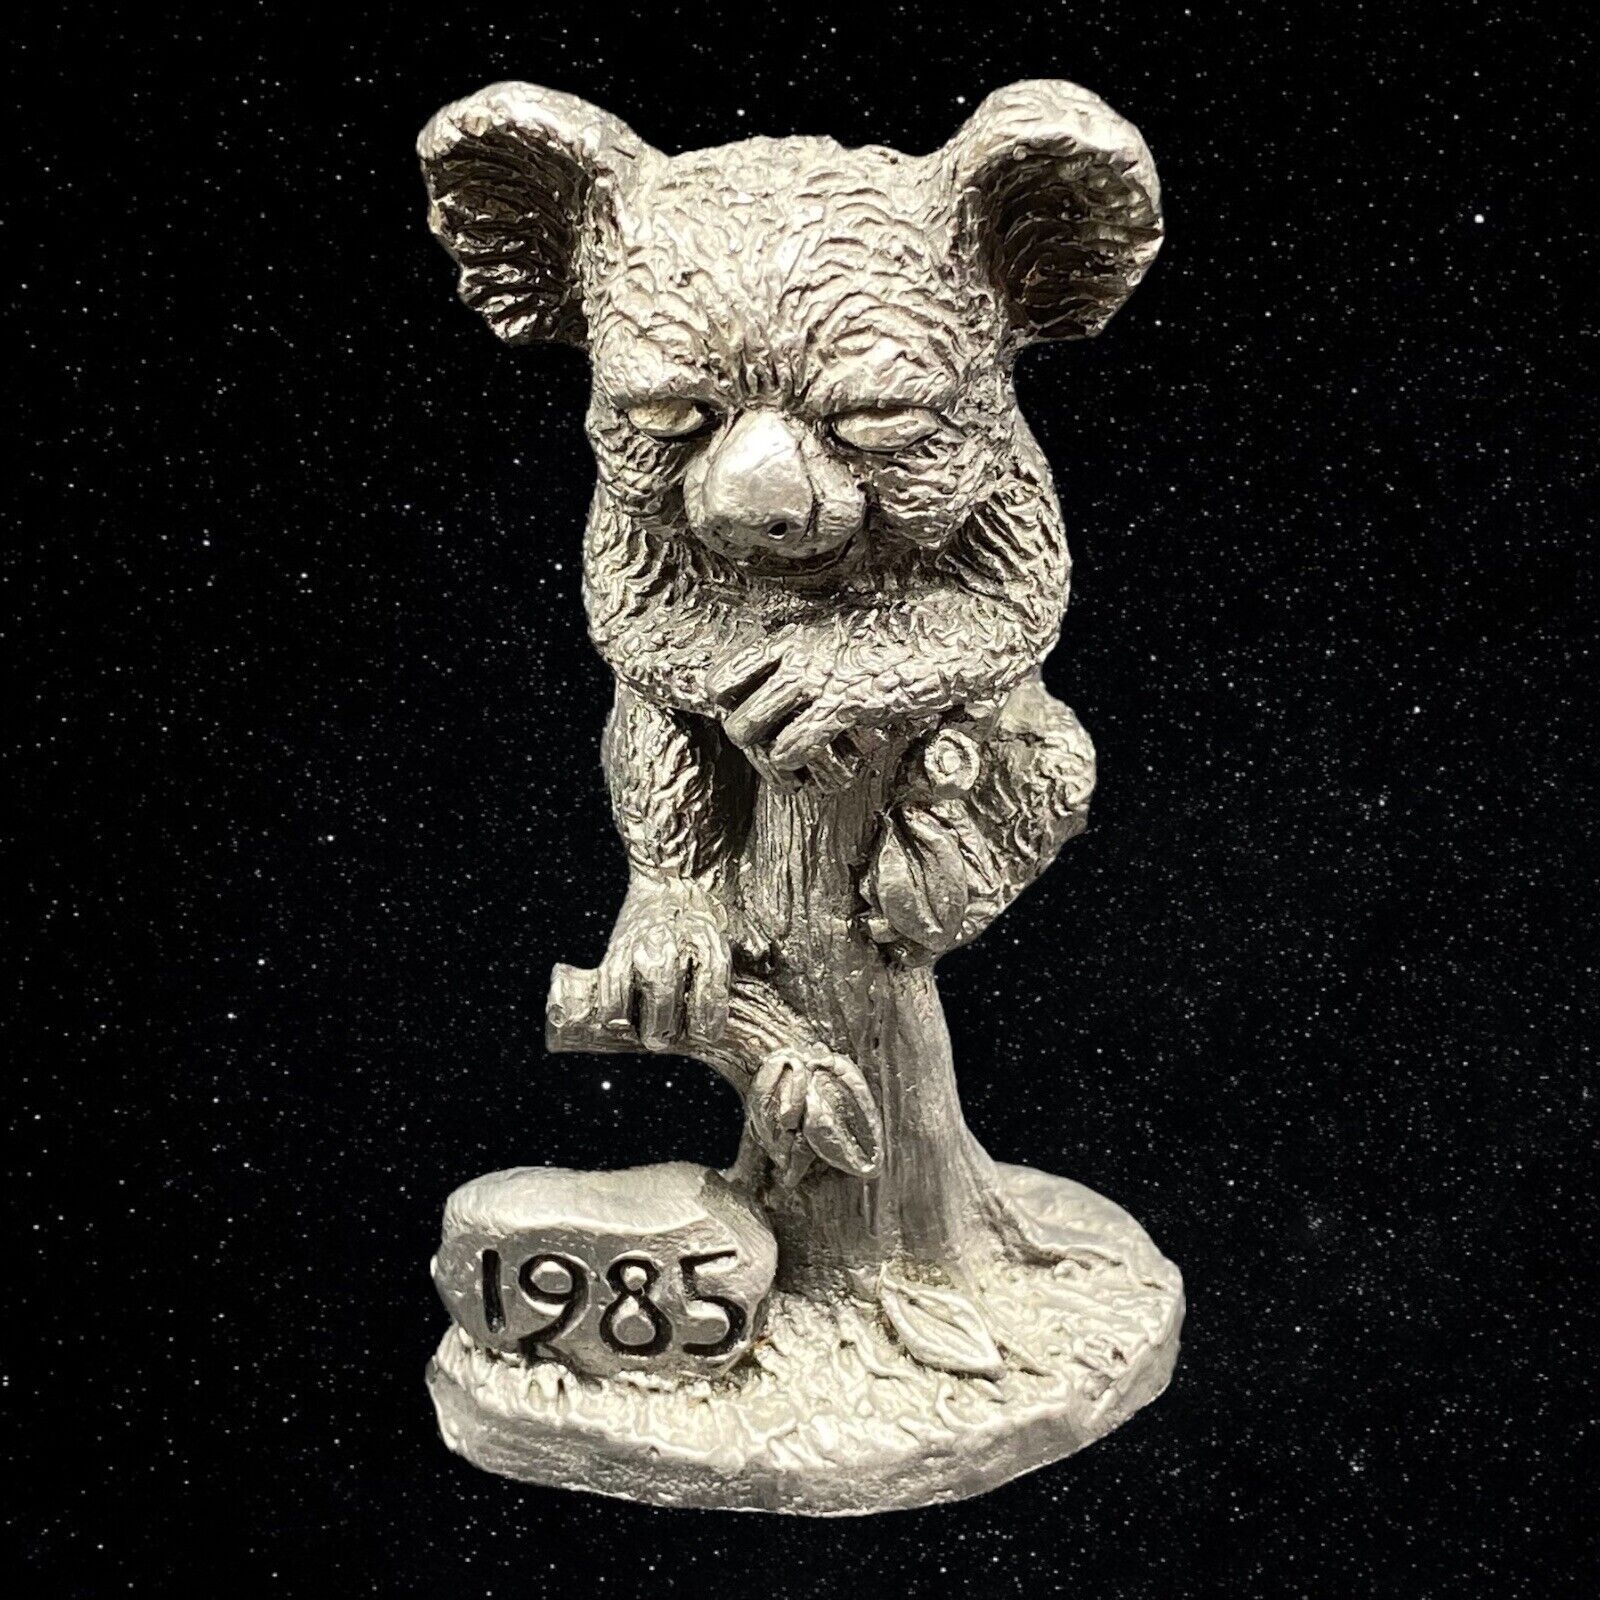 Vintage 1985 Michael Ricker Pewter Koala On Tree Figurine Dated Rock 3.5”T 2”W